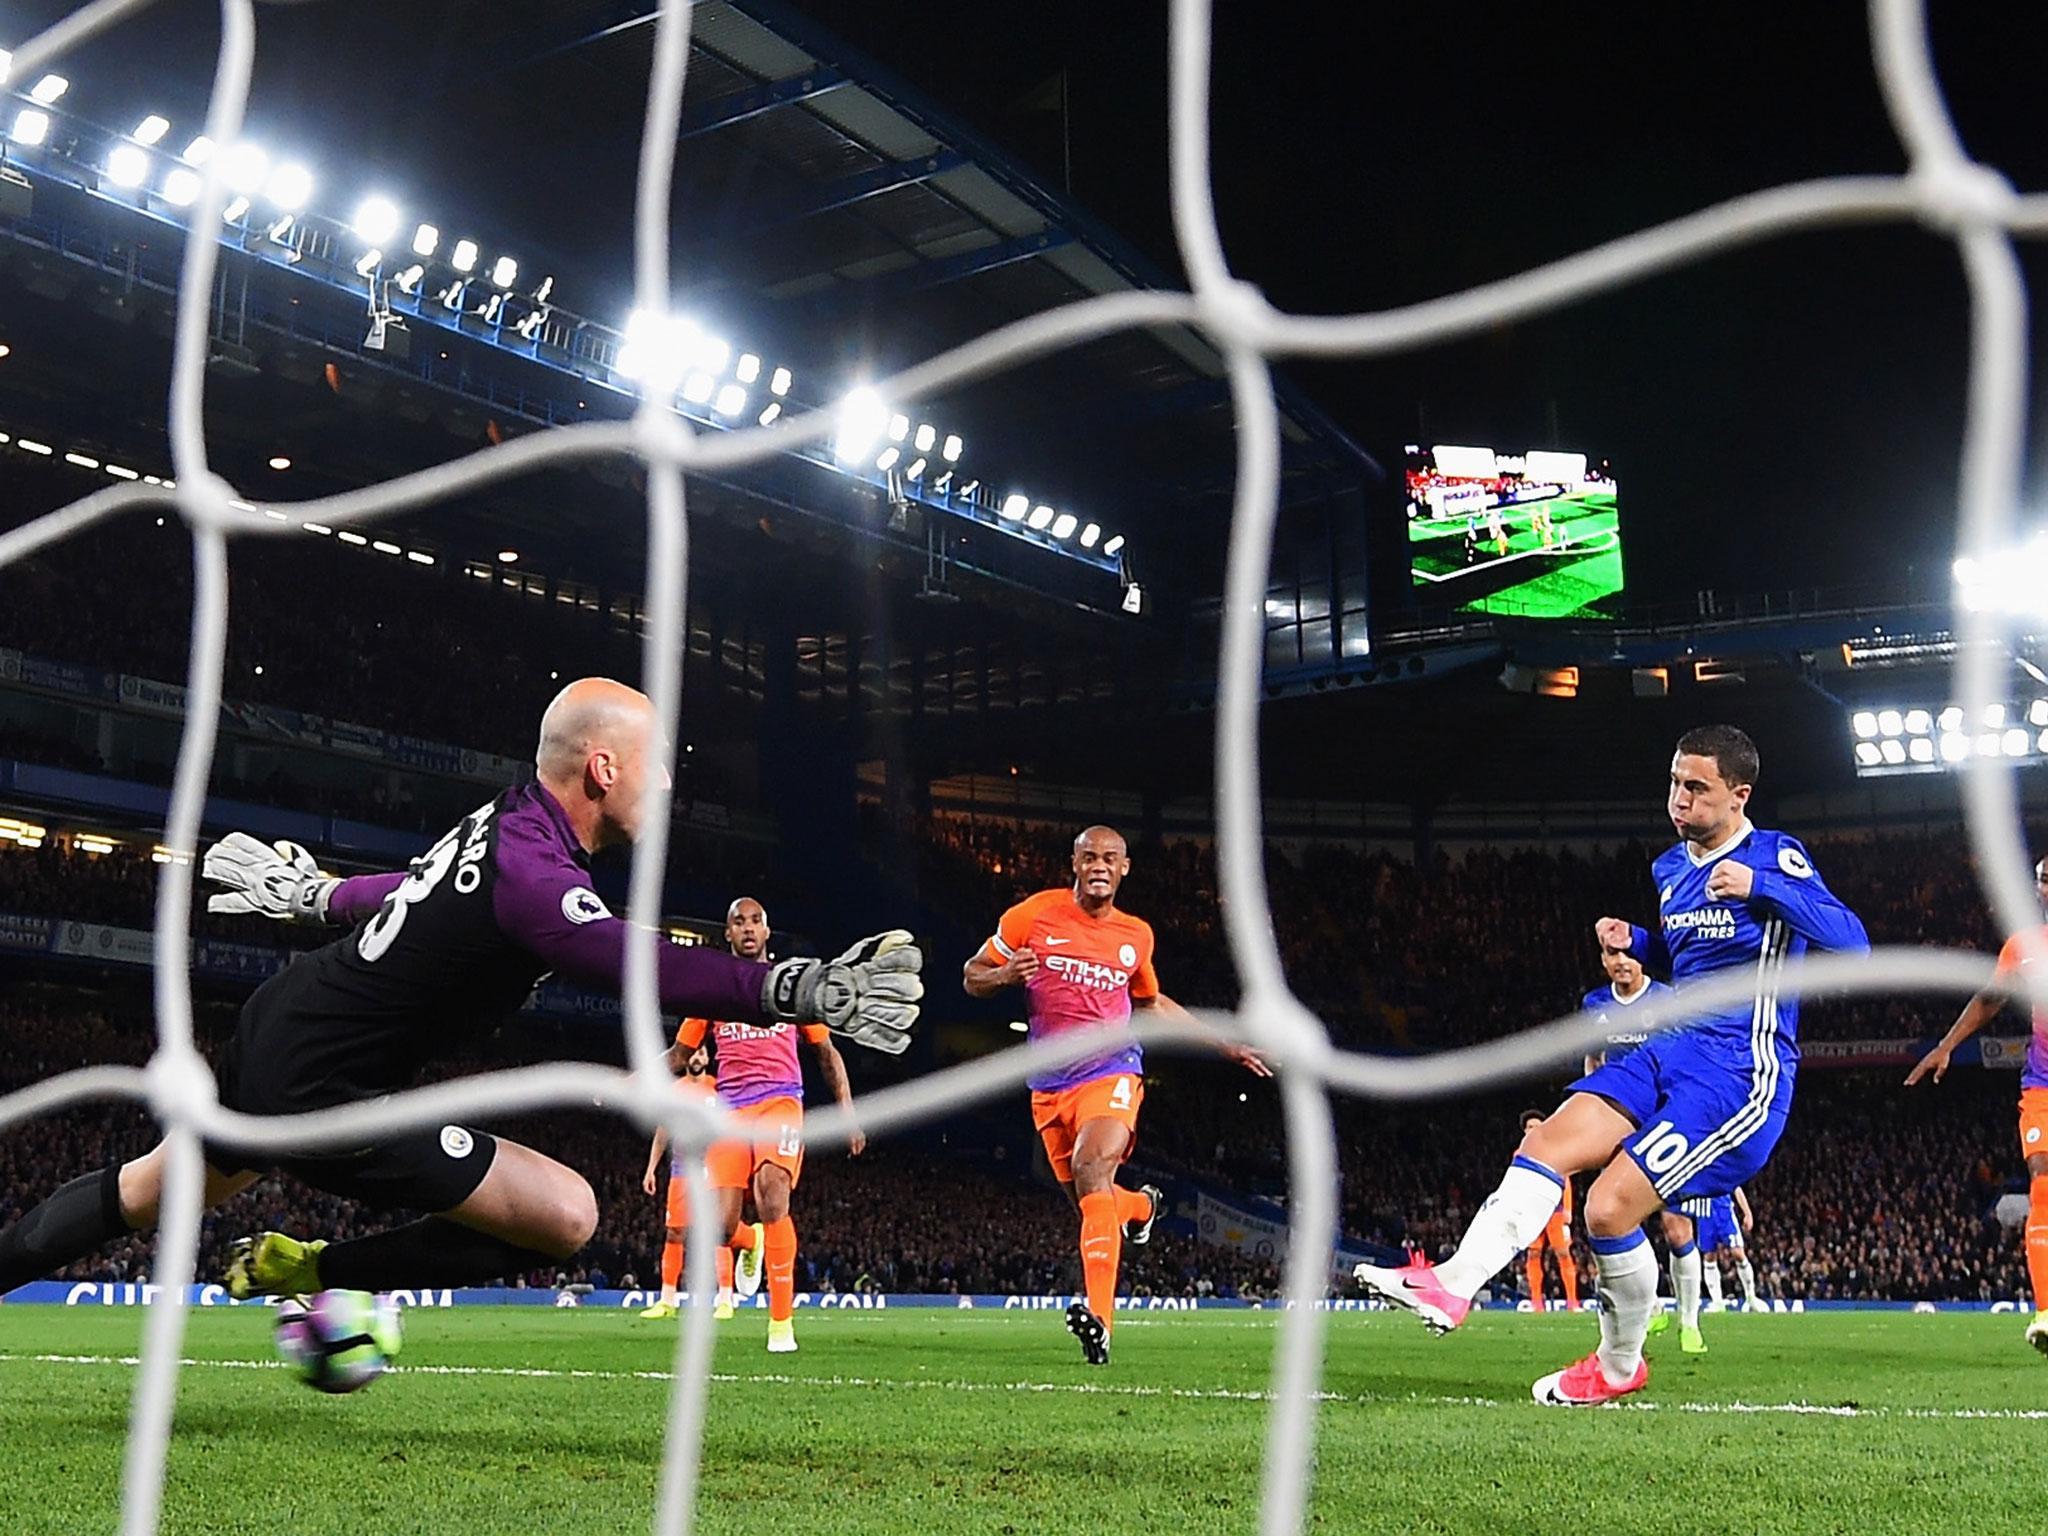 Eden Hazard scored twice to earn Chelsea a valuable win